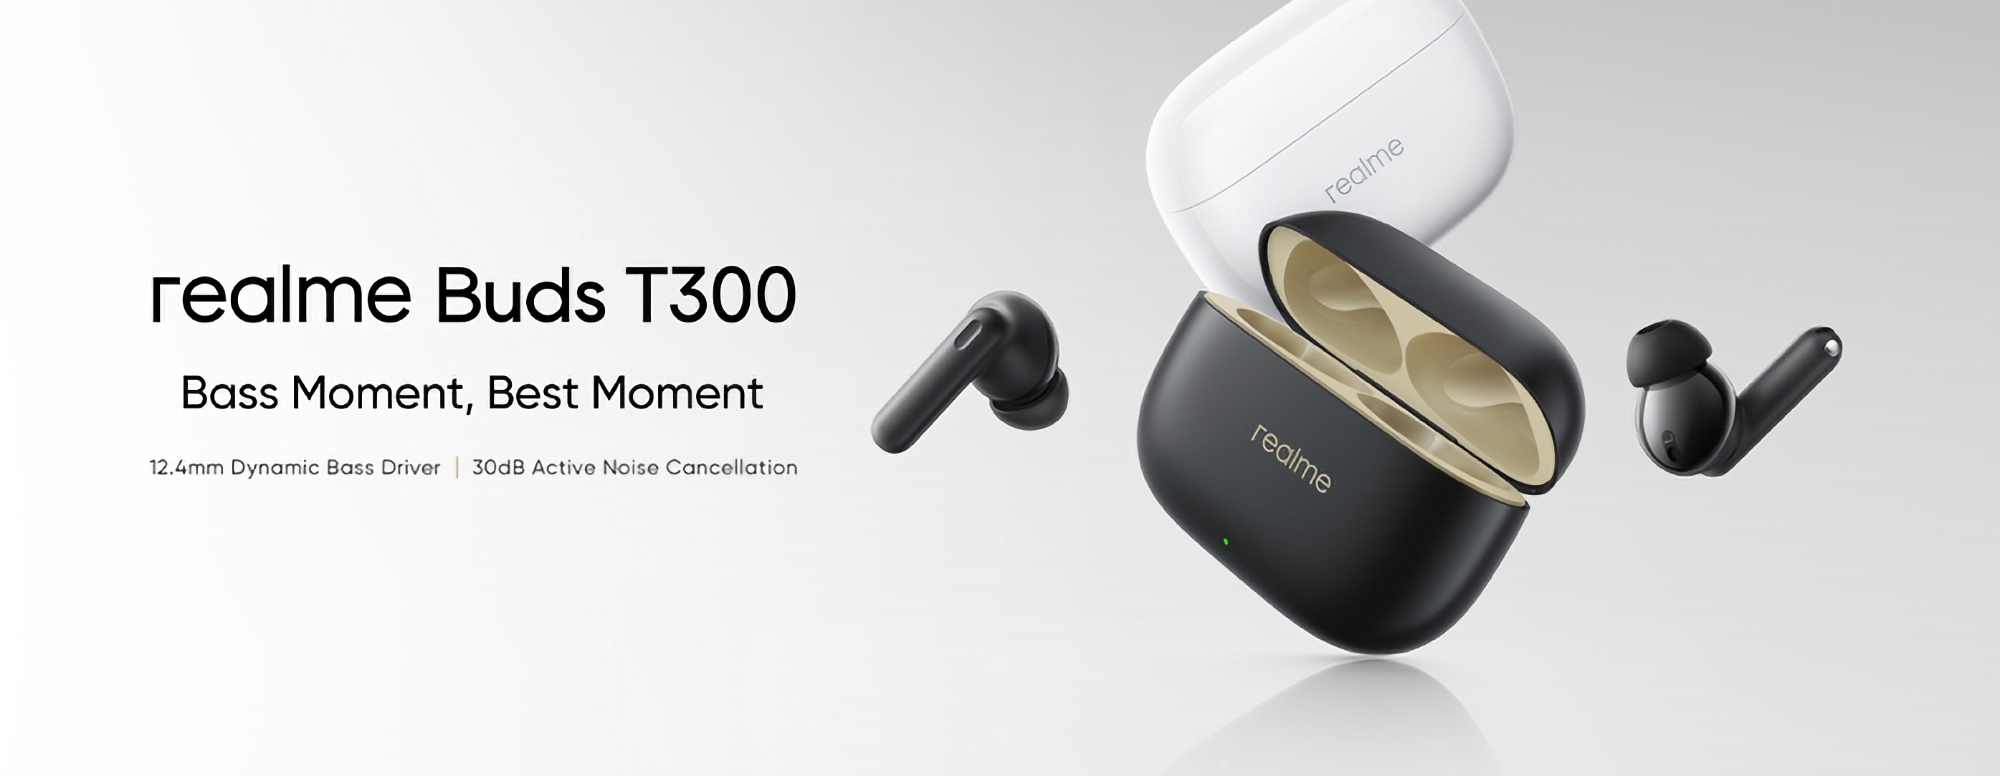 realme Buds T300: auriculares TWS con ANC, tecnología Spatial Audio y hasta 40 horas de autonomía por 25 $.